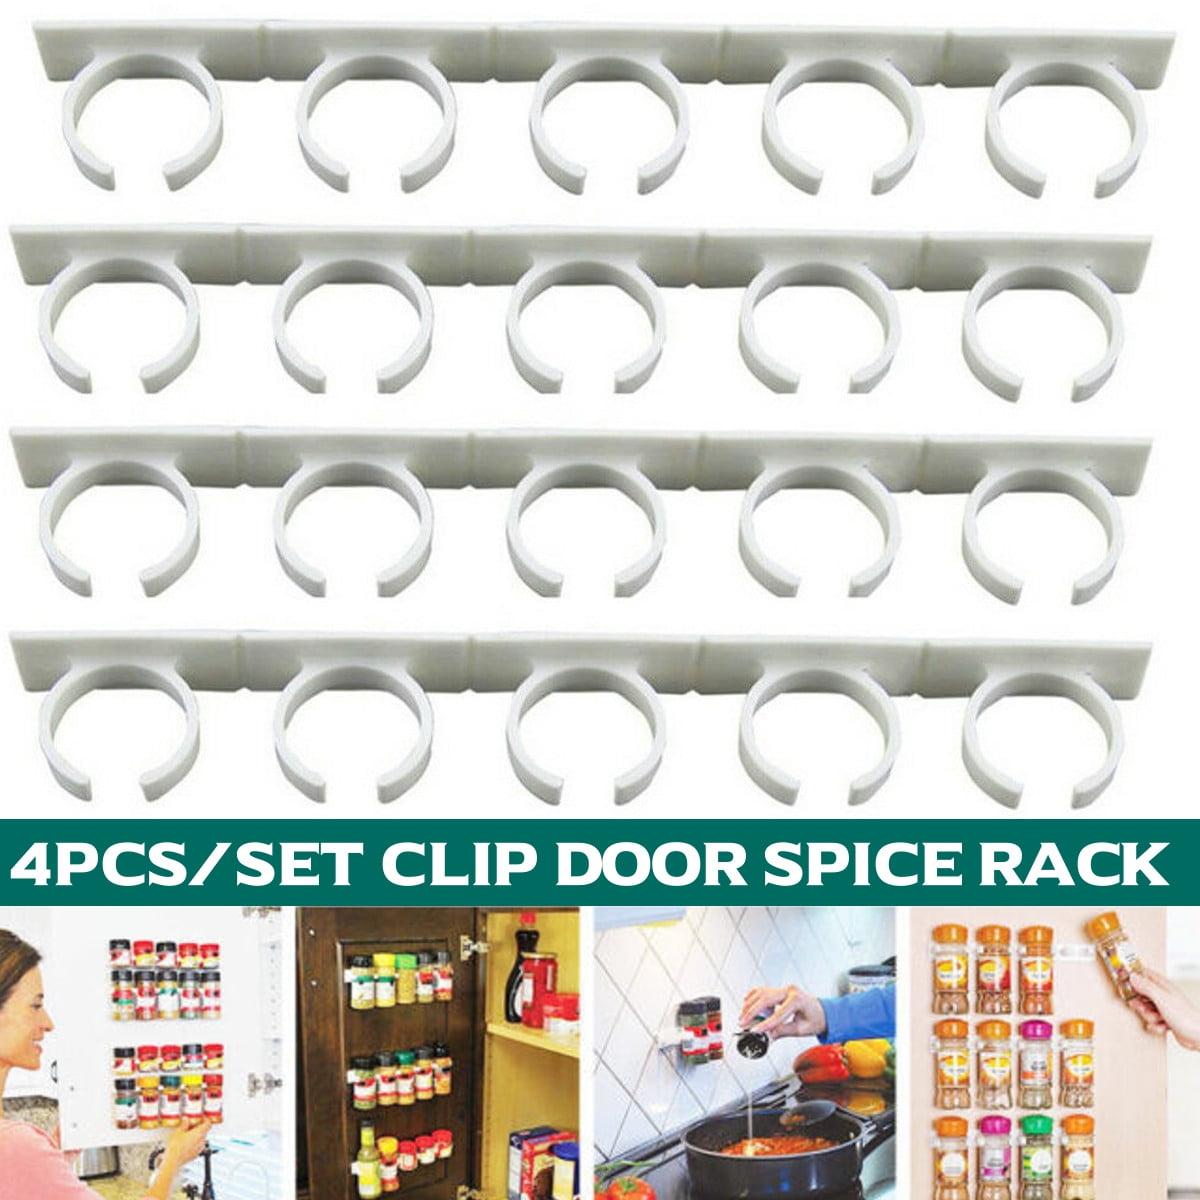 4x 20 Clips Spice Gripper Jar Rack Storage Holder Kitchen Wall Cabinet Door New 